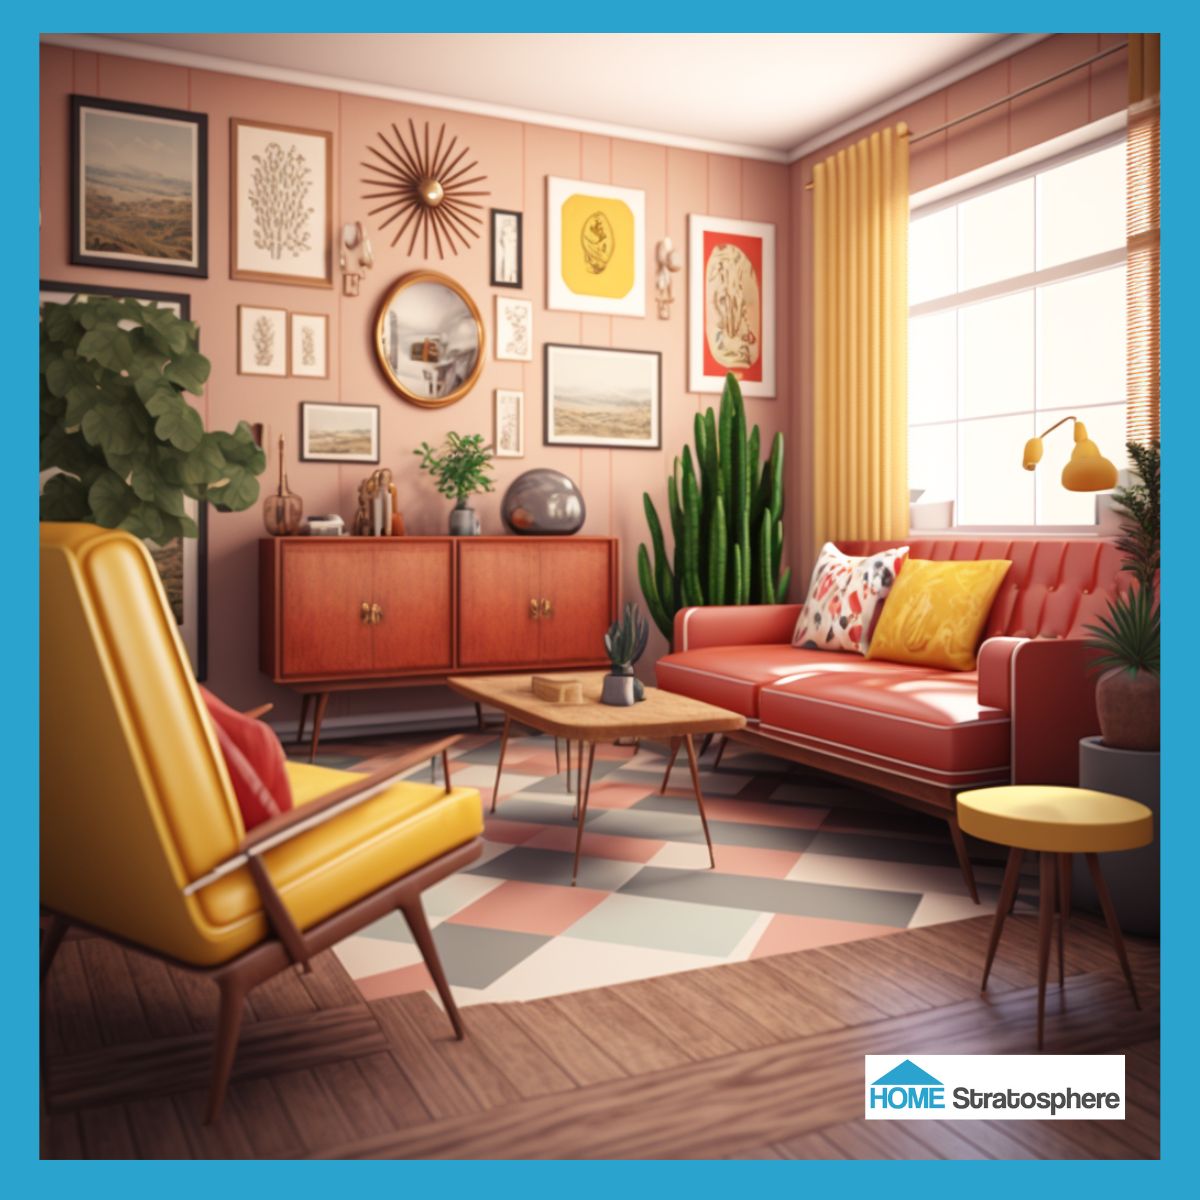 有图案的地毯放在硬木地板上很好看，这个空间里的彩色几何地毯就是一个很好的例子。虽然这个房间的墙壁是柔和的粉红色，但沙发是明亮的橙红色。配上黄色的窗帘和扶手椅，它看起来棒极了。艺术品、植物和抱枕确保这个空间一点也不无聊。